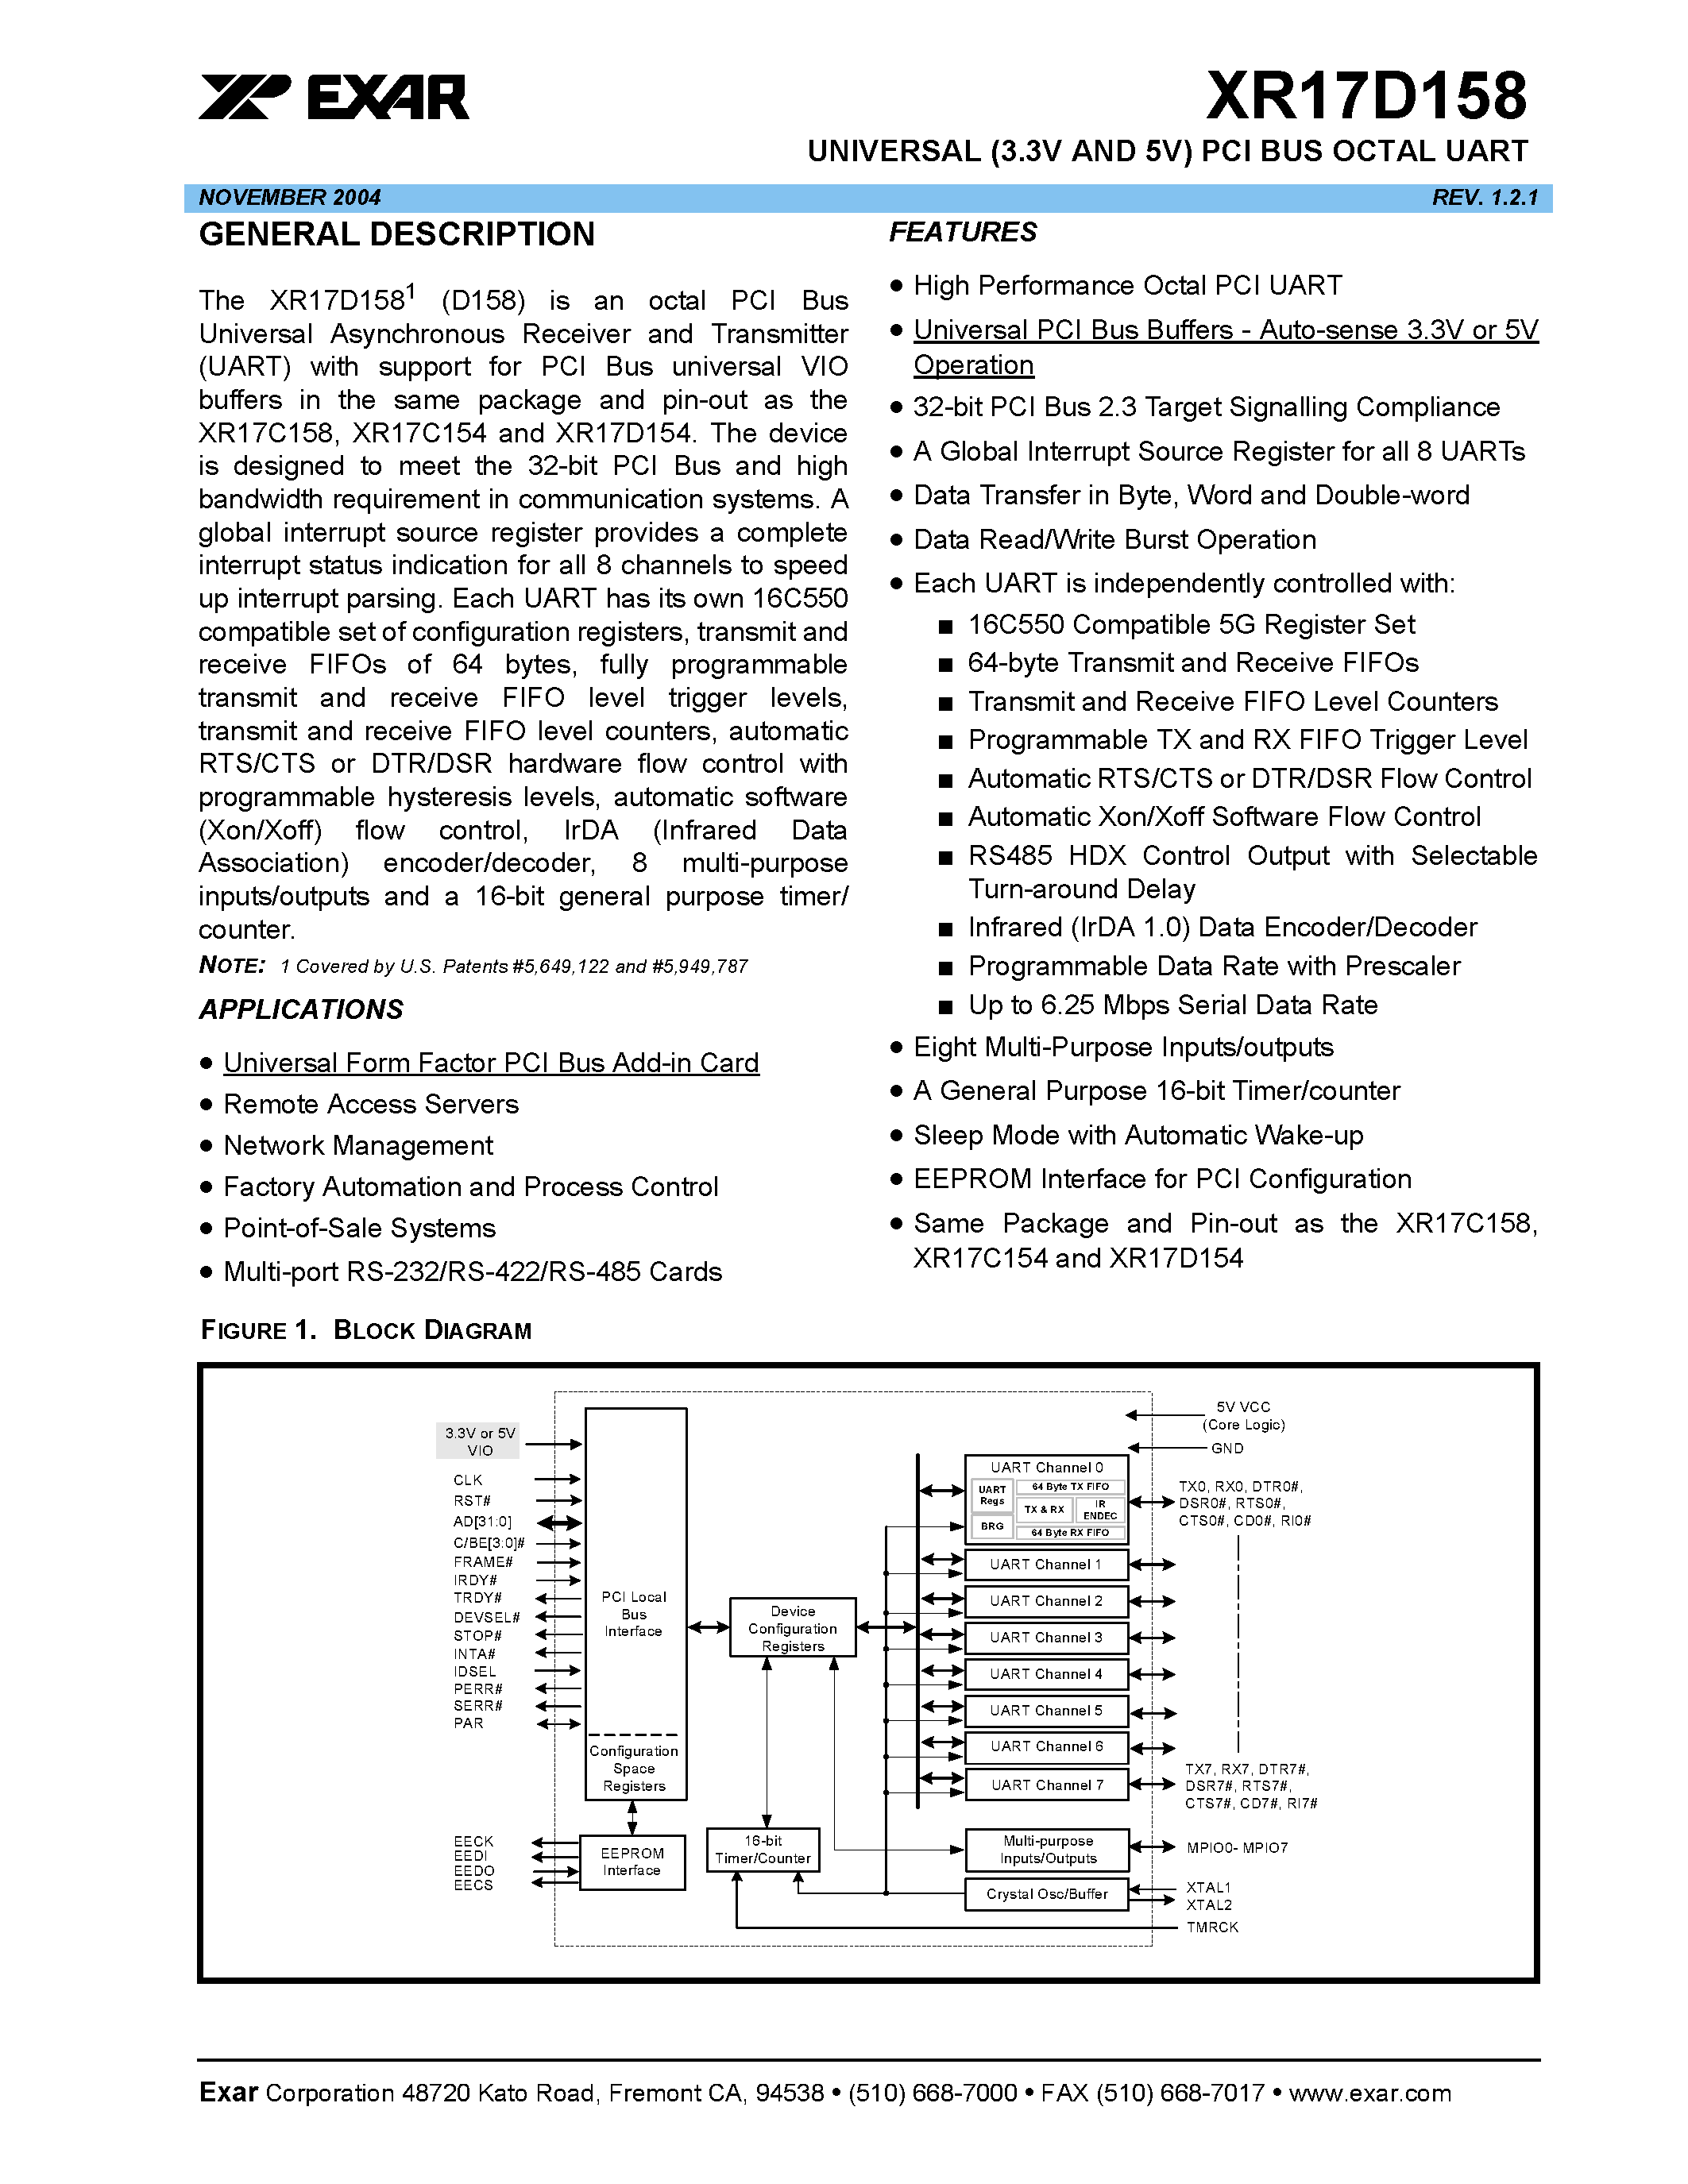 Даташит XR17D158 - UNIVERSAL (3.3V AND 5V) PCI BUS OCTAL UART страница 1